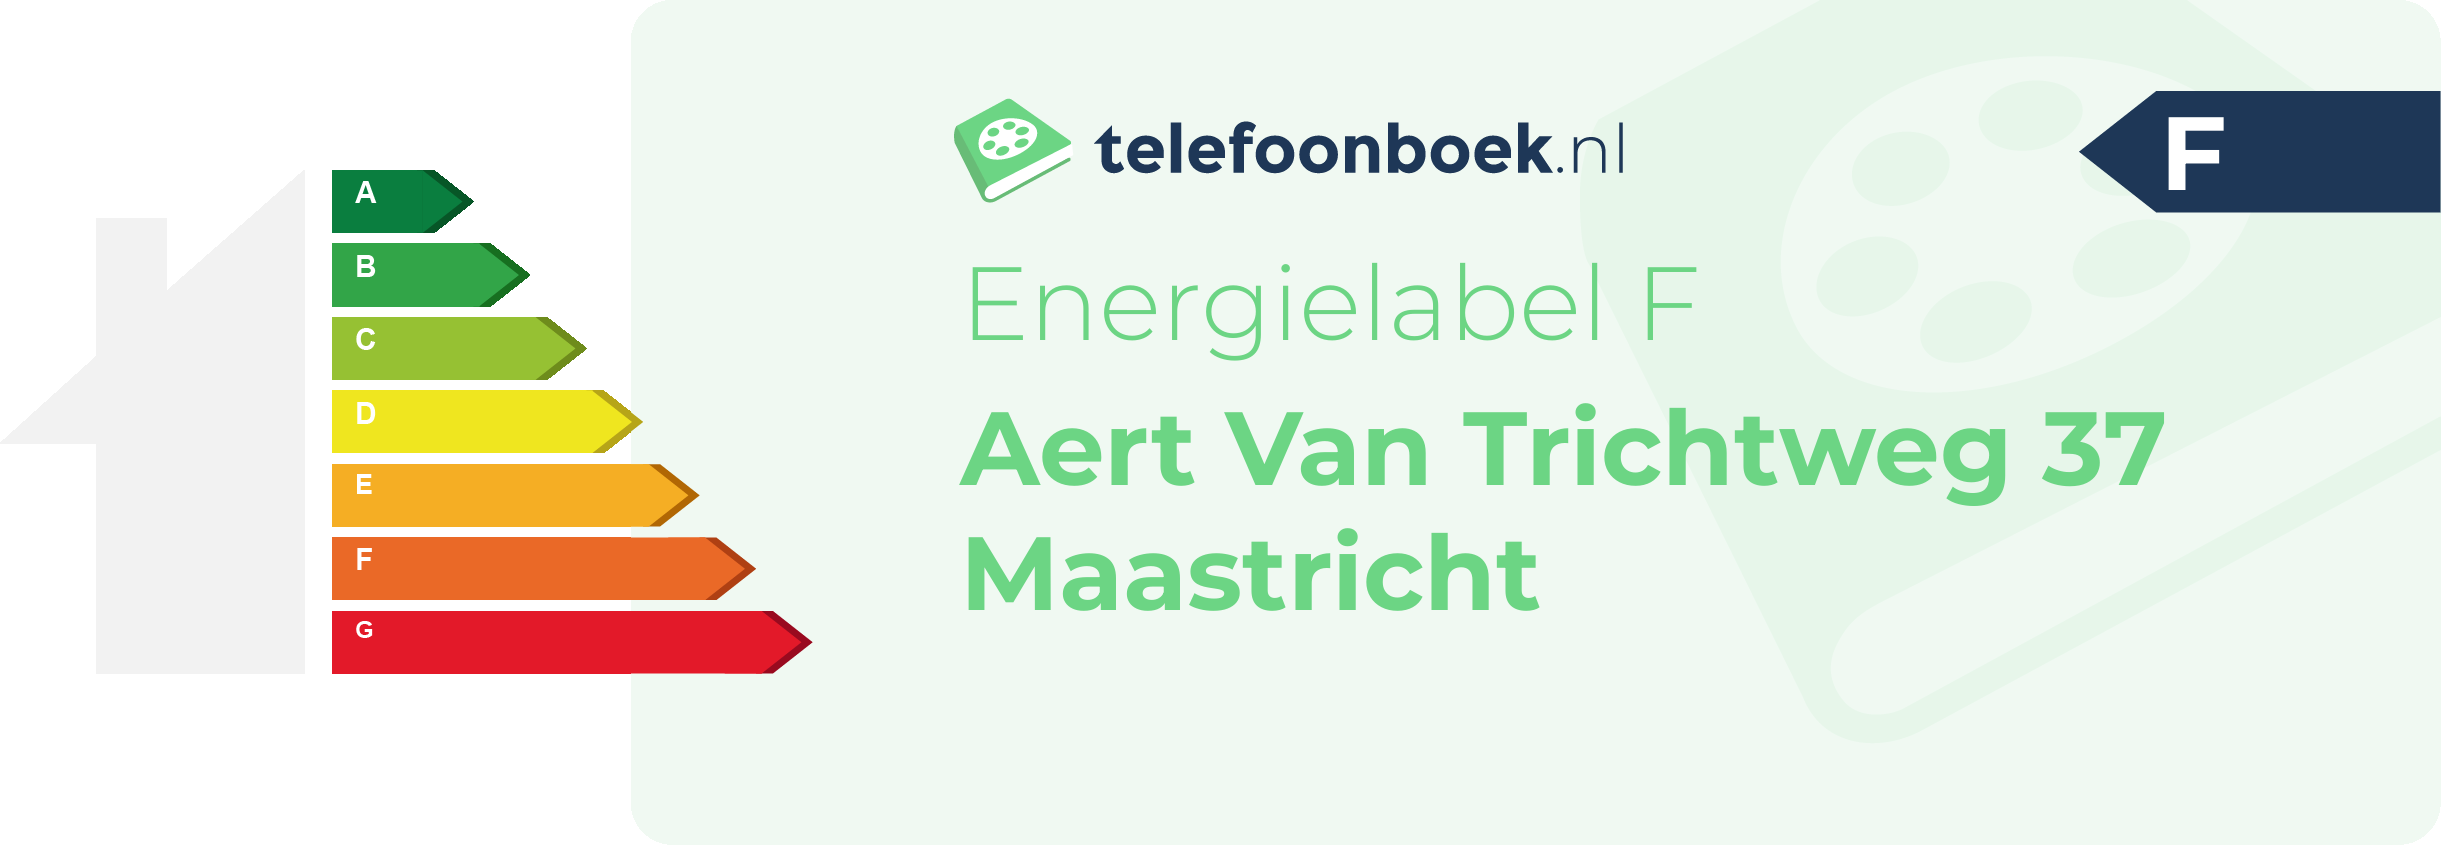 Energielabel Aert Van Trichtweg 37 Maastricht